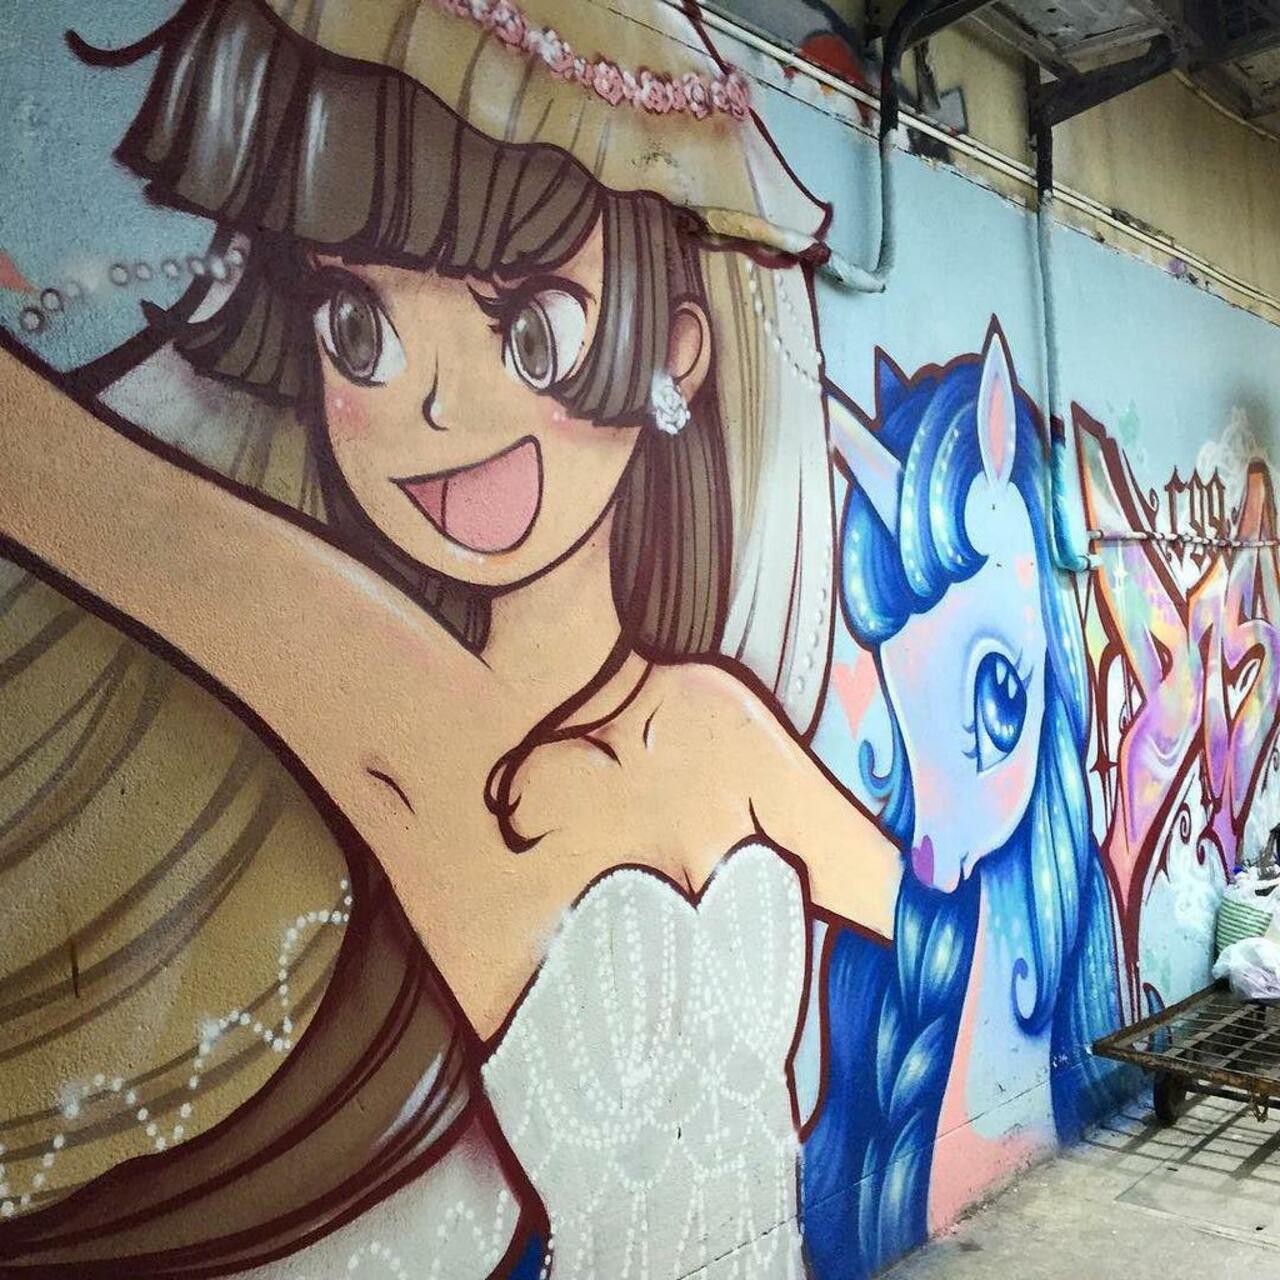 via #barbieszeman "http://ift.tt/1LjHQ6P" #graffiti #streetart http://t.co/LZFFWKwFTf